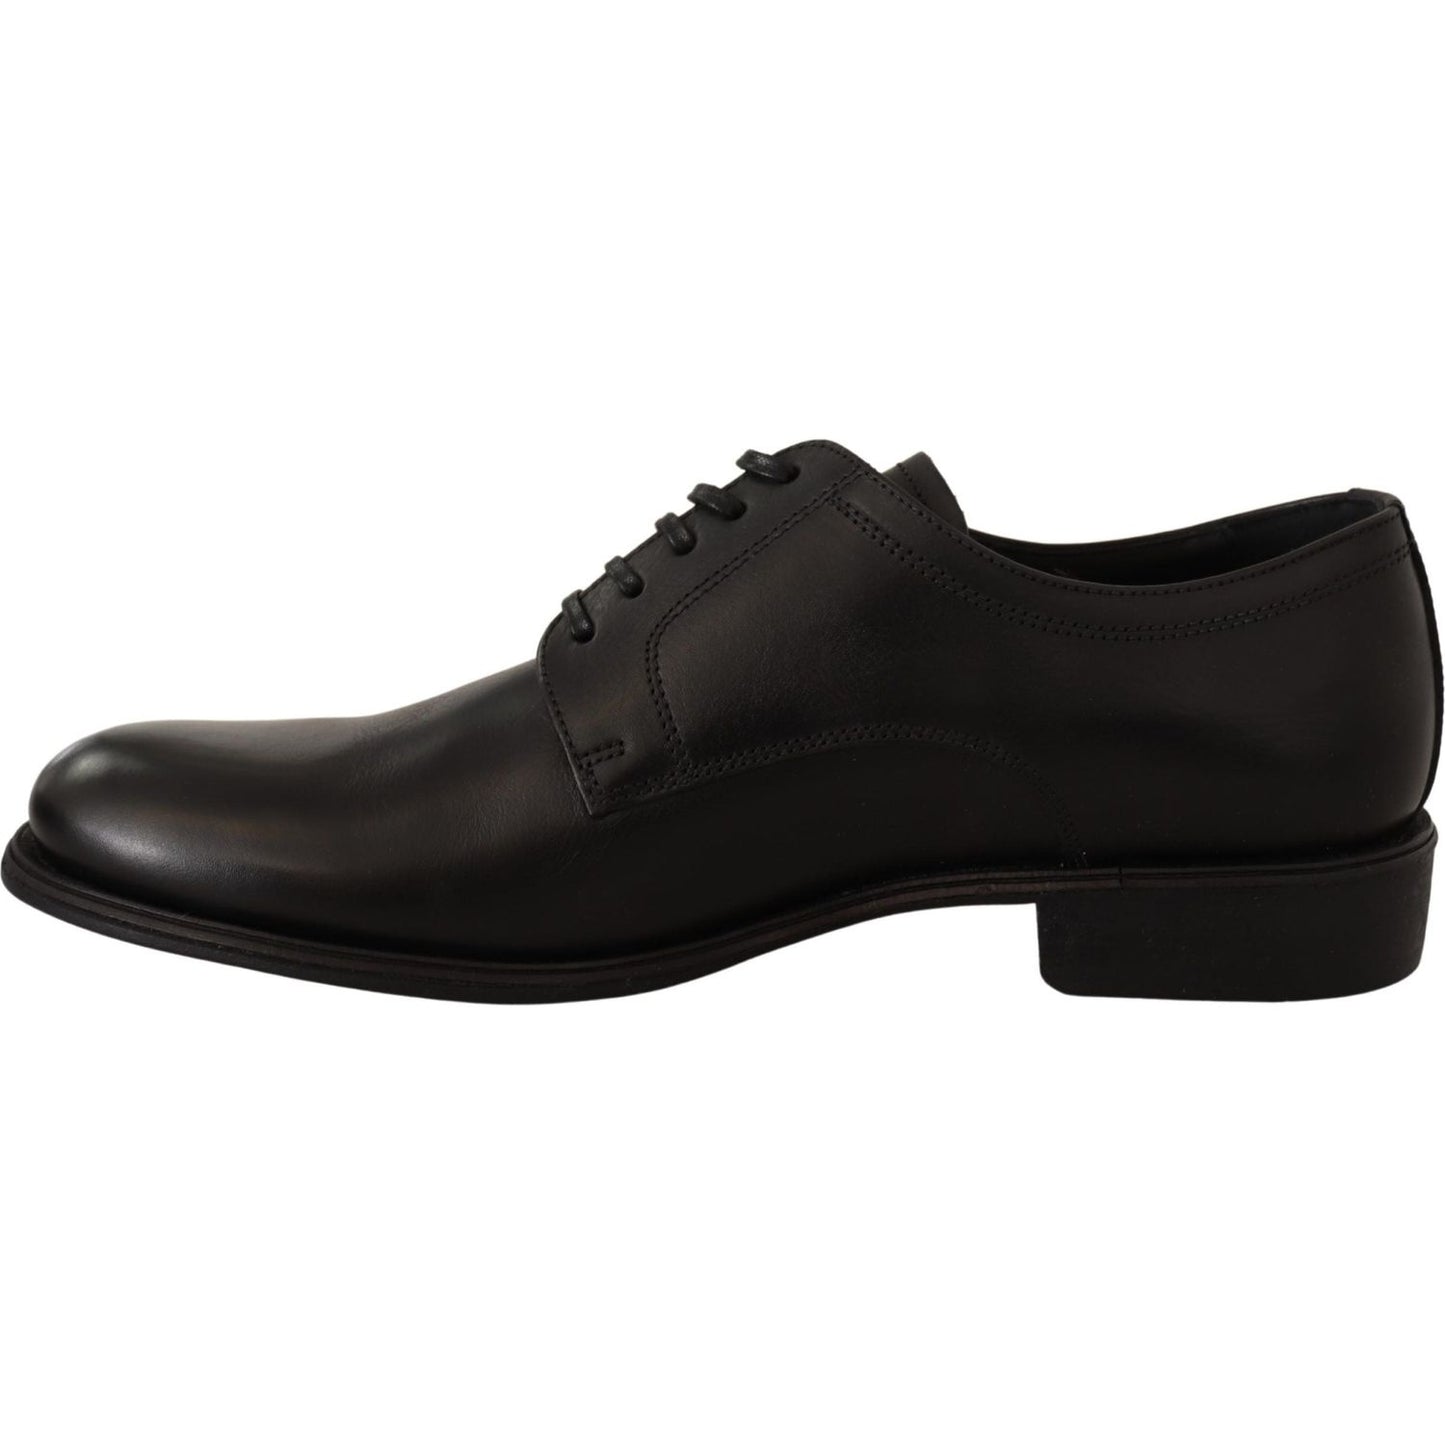 Dolce & Gabbana Elegant Black Derby Formal Shoes Dress Shoes black-leather-lace-up-mens-formal-derby-shoes-3